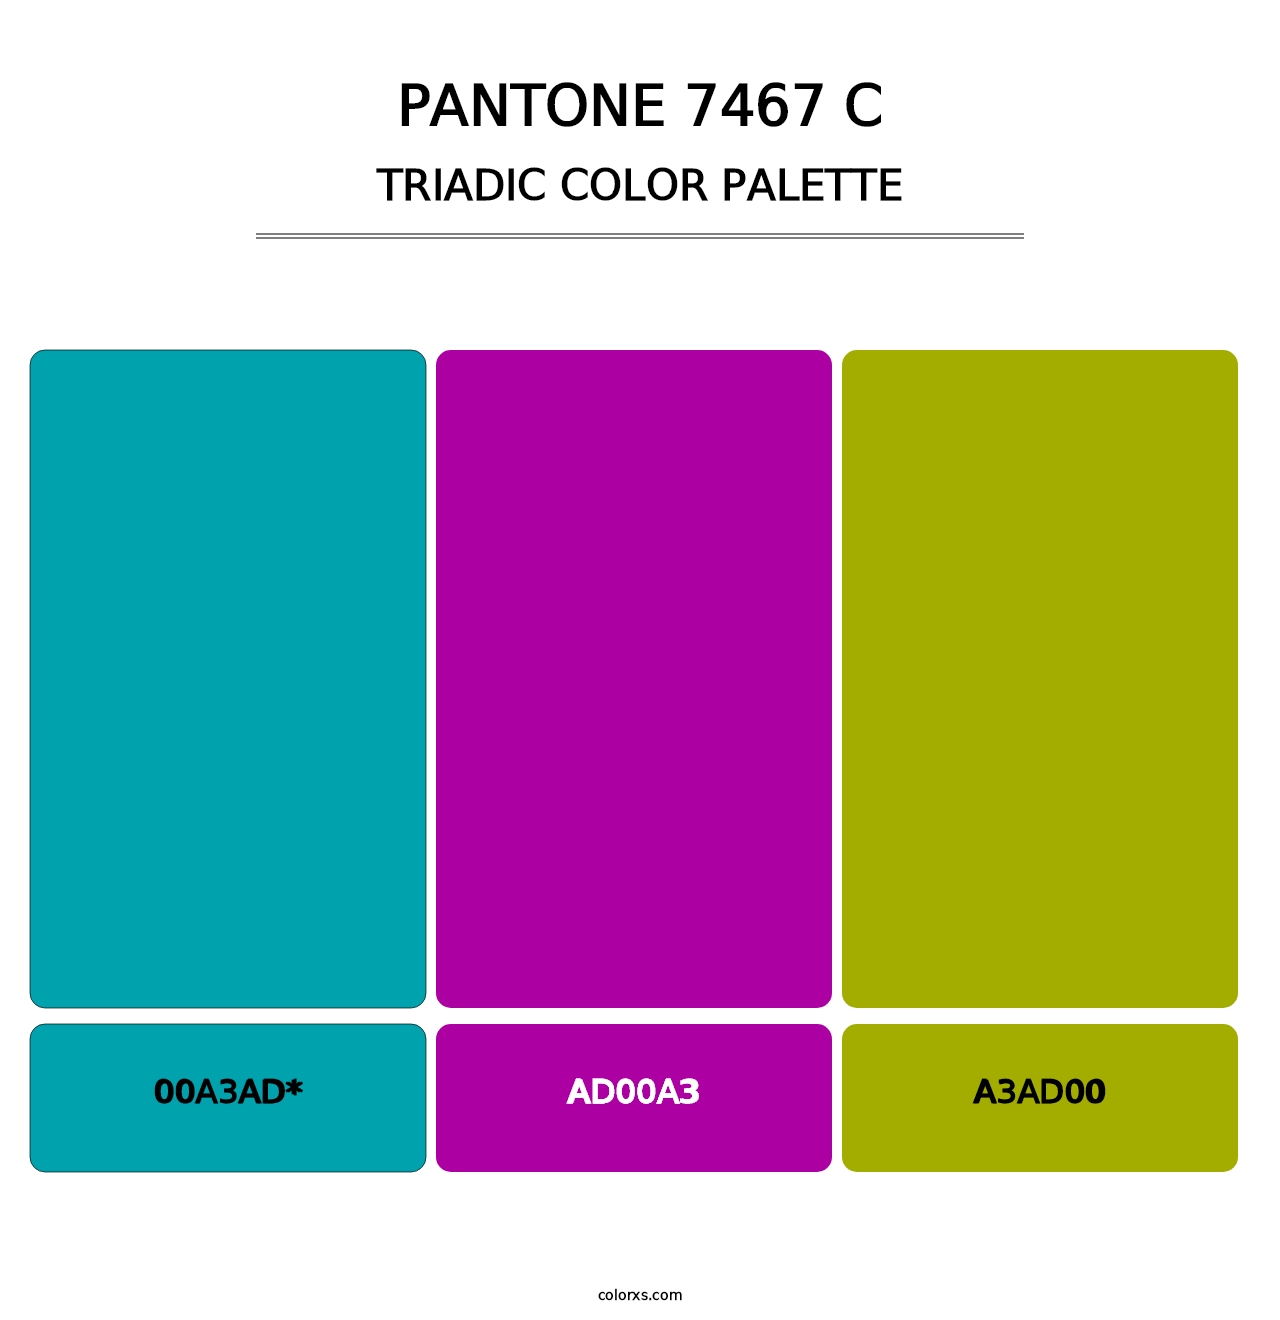 PANTONE 7467 C - Triadic Color Palette